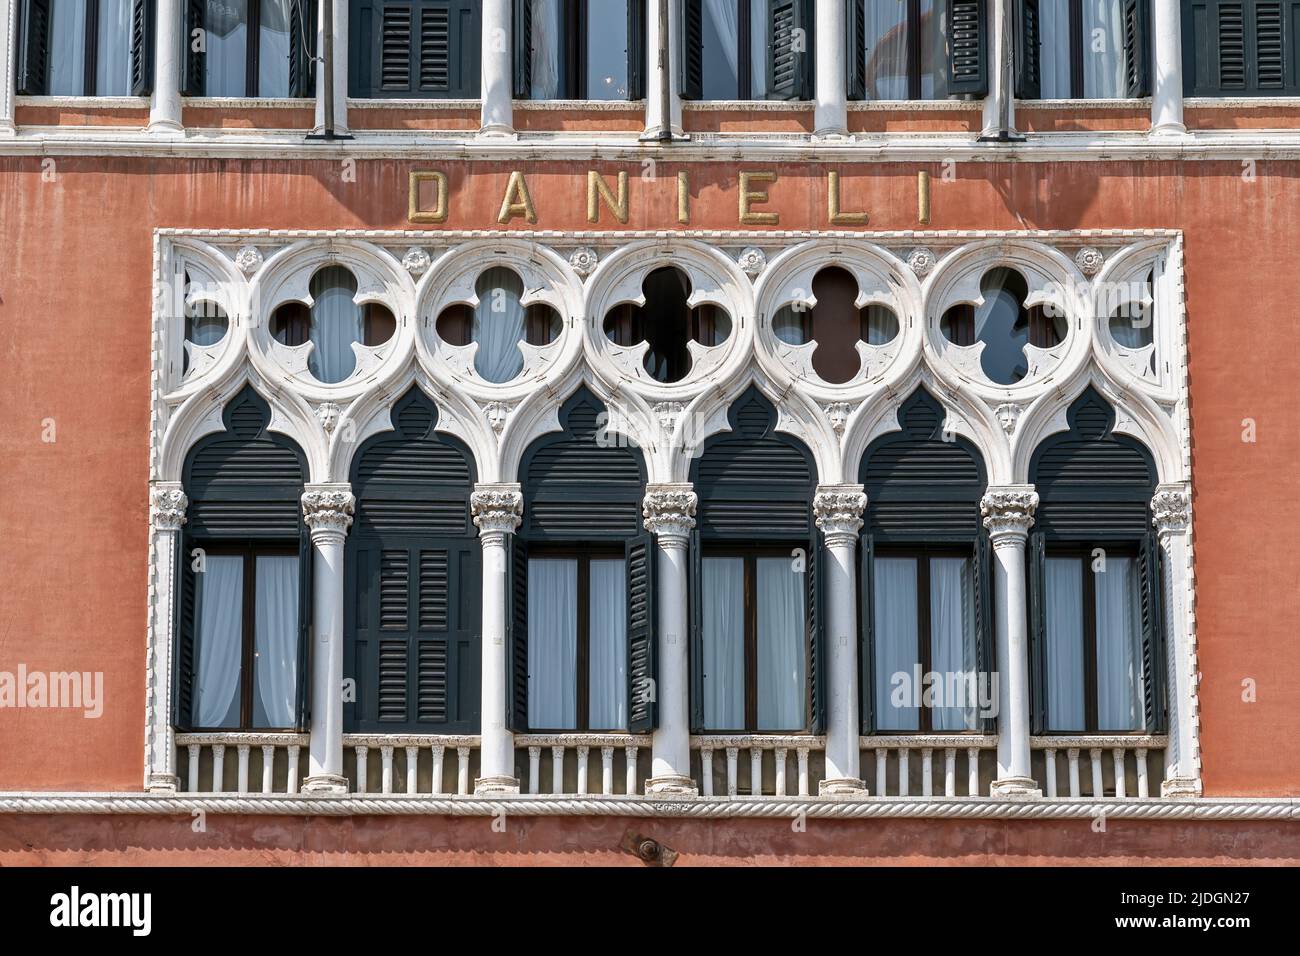 Hotel Danieli, fünf-Sterne-Luxus, weltbekannt. Fassade im venezianischen gotischen Stil. Venedig, Italien, Europa, EU. Hotelsignenname. Nahaufnahme. Stockfoto